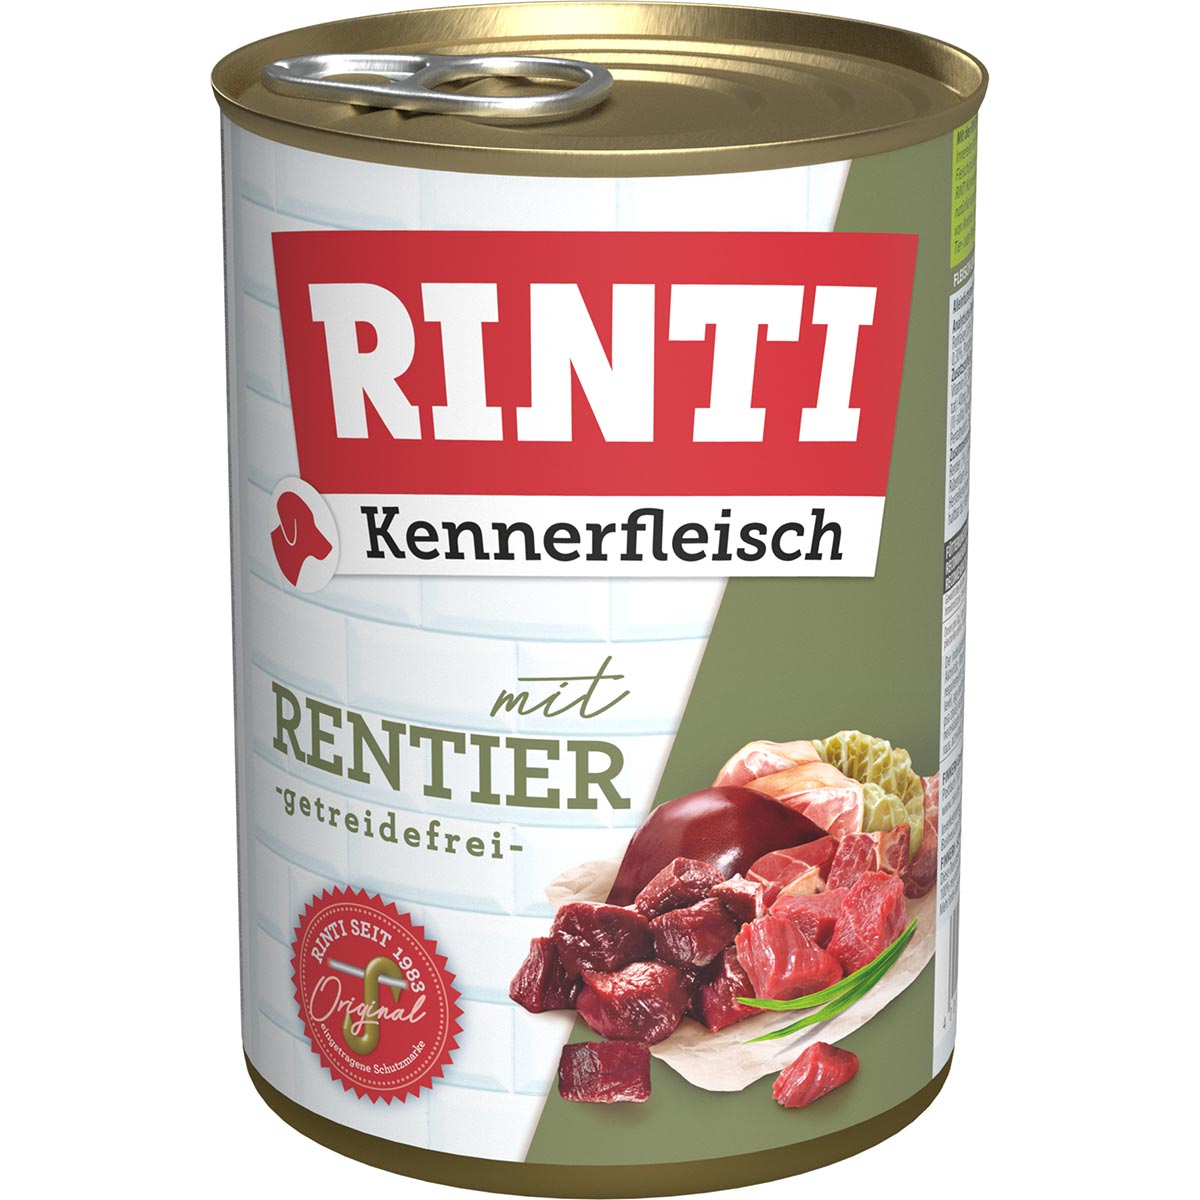 Rinti Kennerfleisch Rentier 24x400g von Rinti